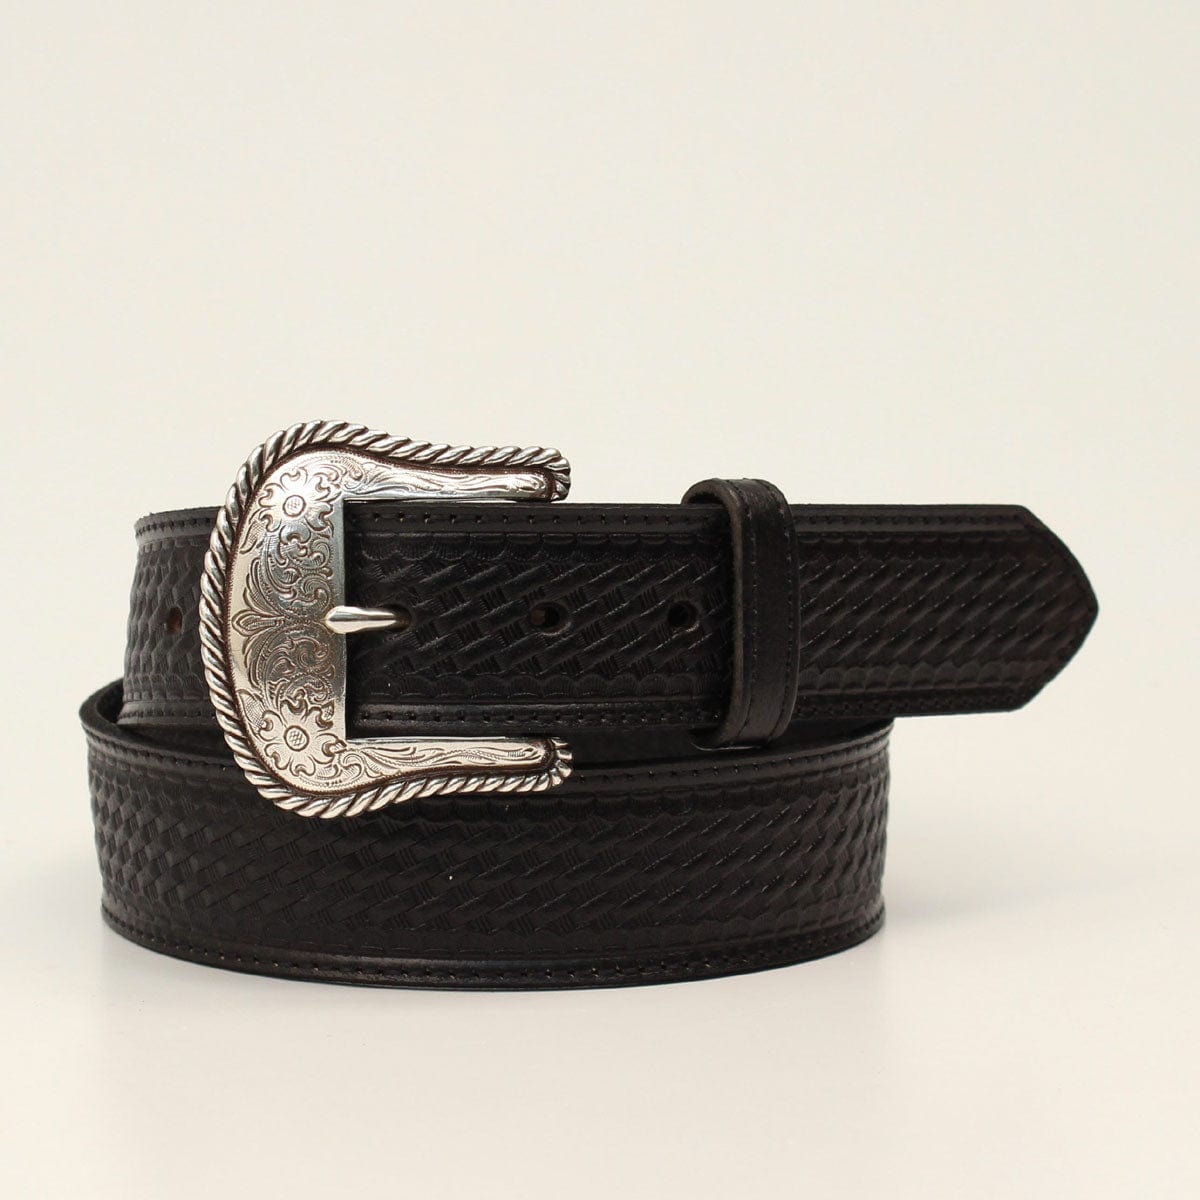 Best Leather Basket Weave Belt - USA Made - Hanks Belts